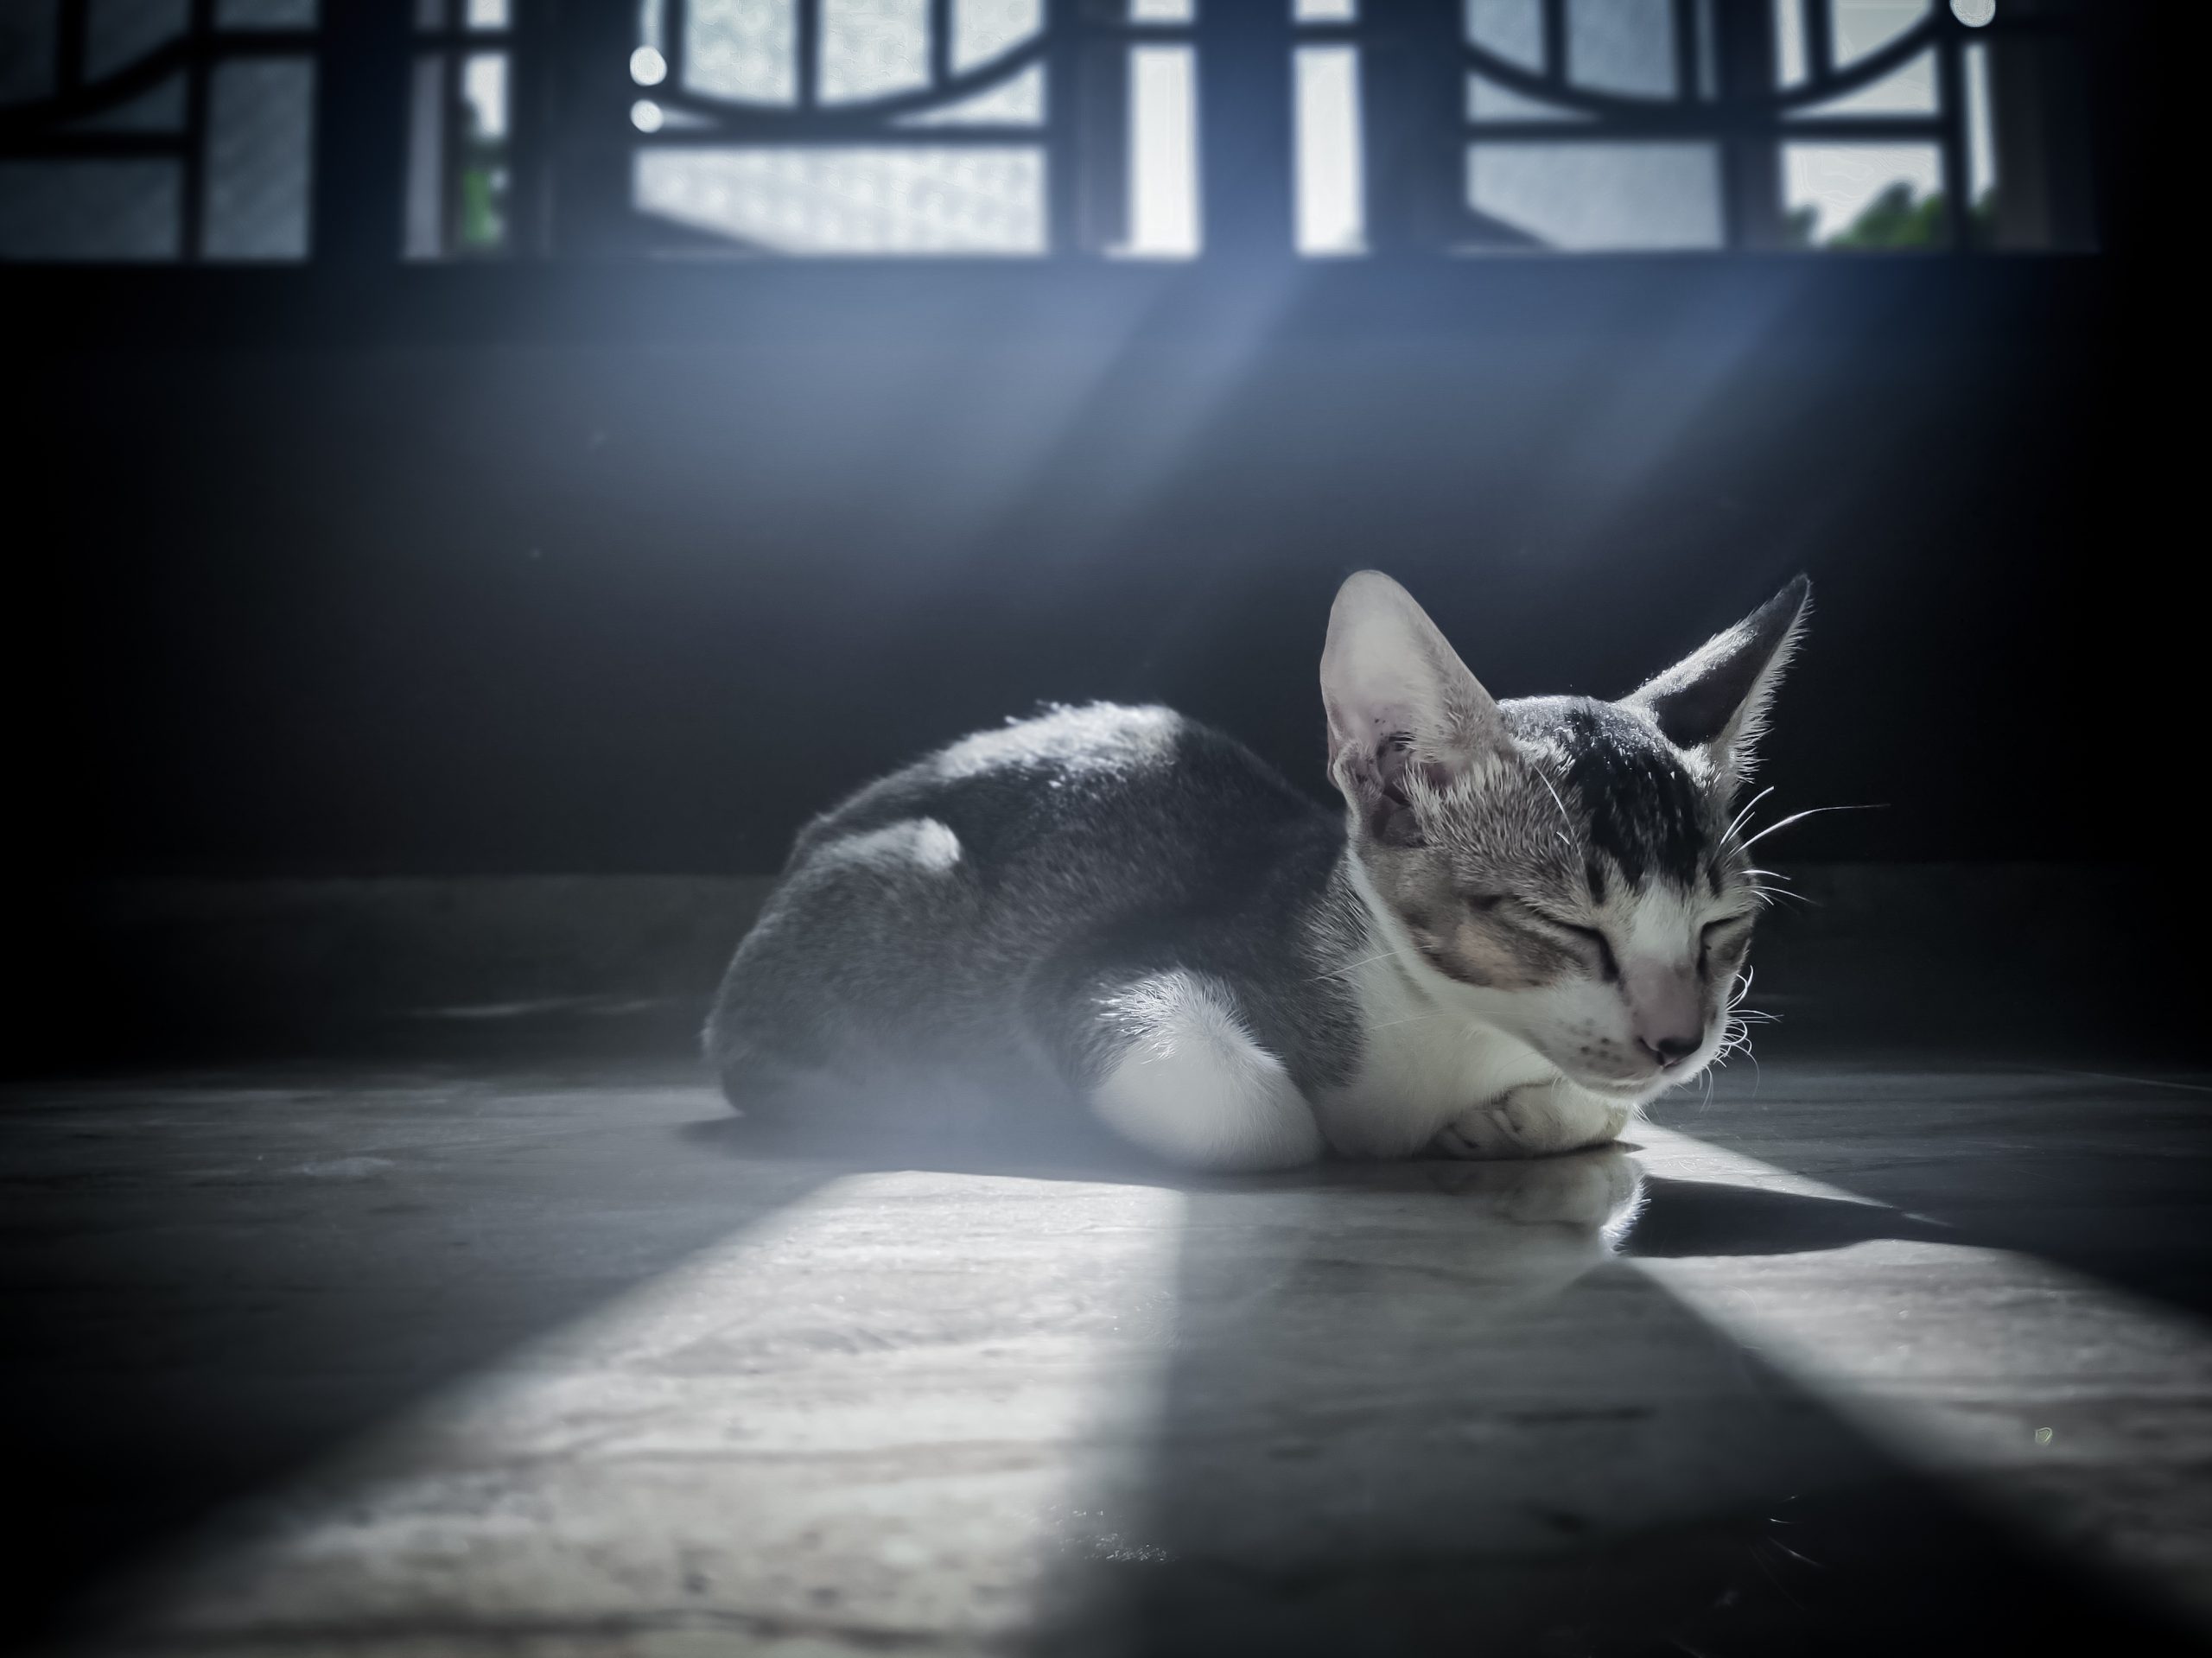 A cat resting in sunlight.